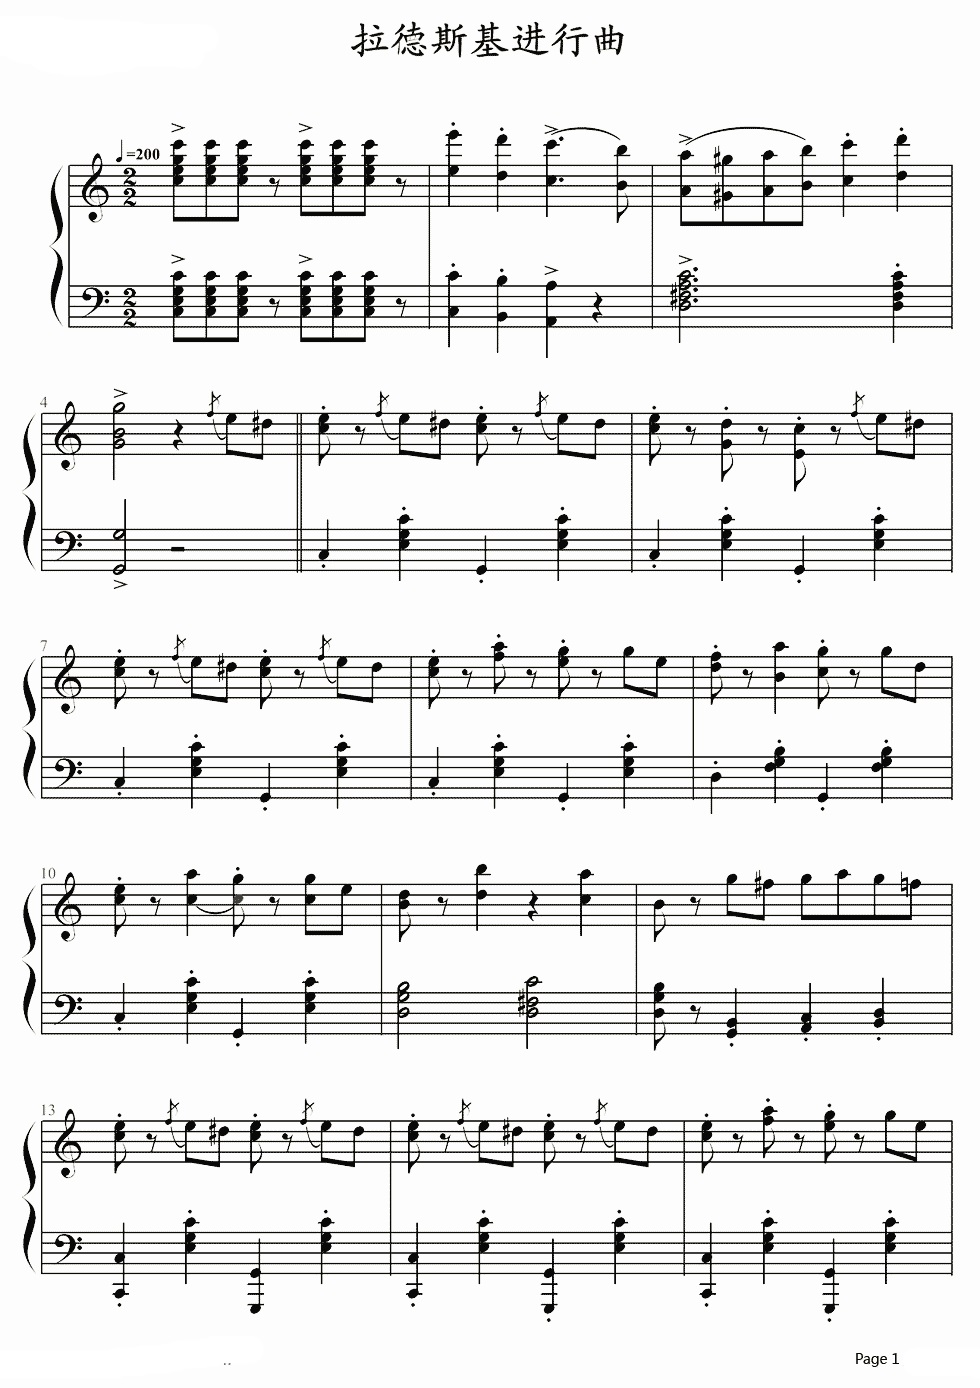 《拉德斯基进行曲》的钢琴谱钢琴曲谱